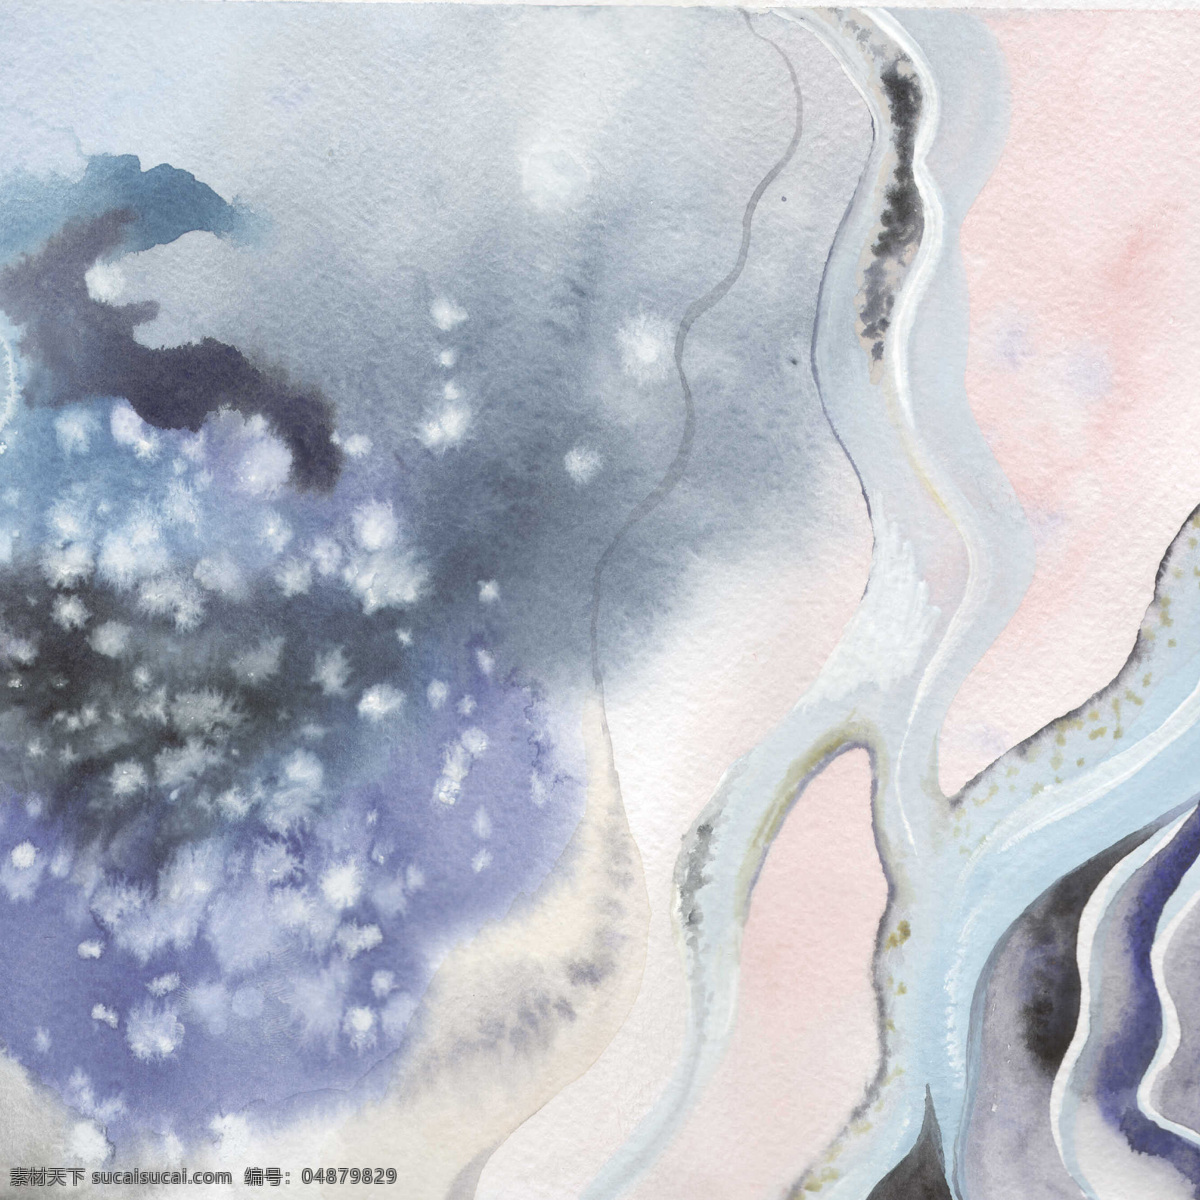 清雅 高级 粉 蓝色 河流 壁纸 图案 装饰设计 灰白色墨点 灰蓝色河流 大理石纹理 壁纸图案